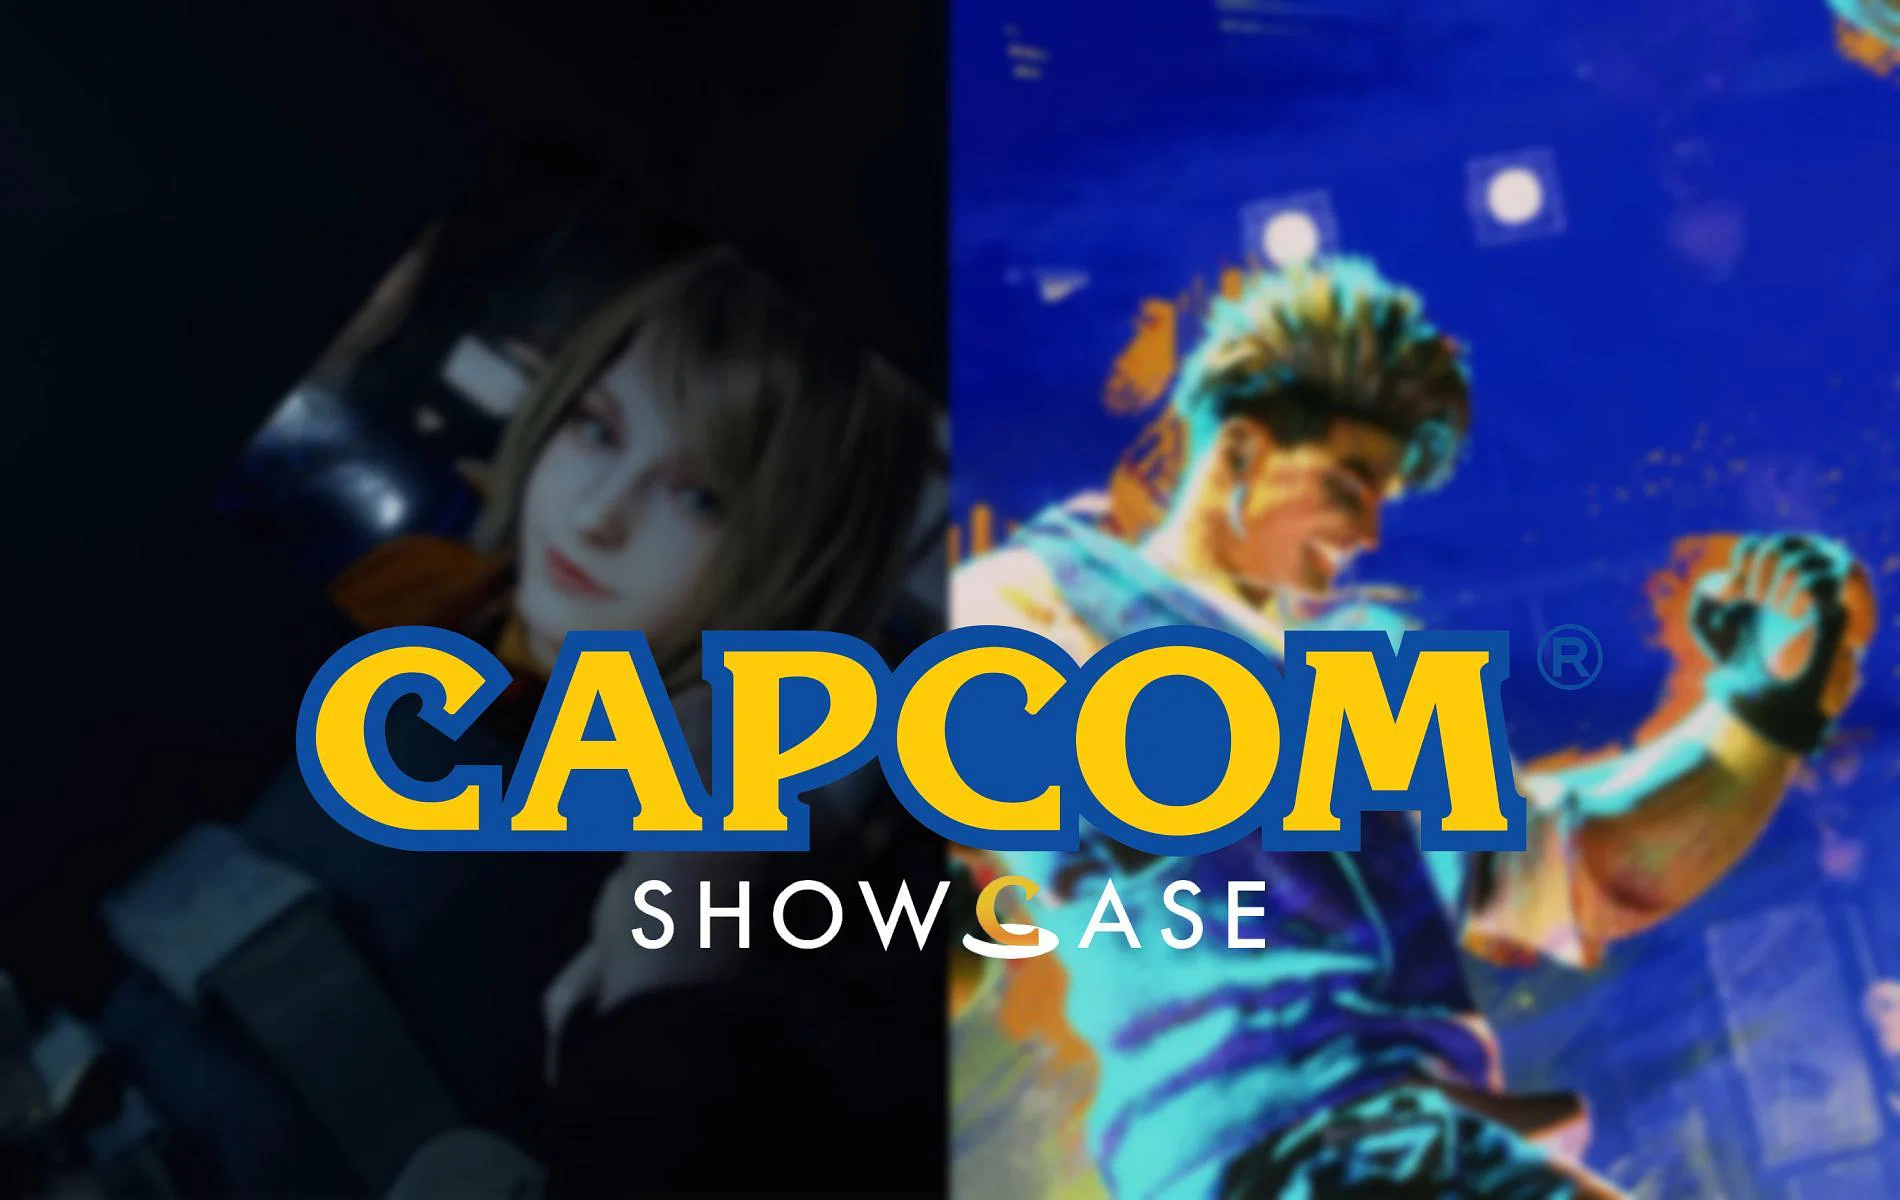 Capcom showcase 2022 ürituse kuupäev on selgunud!